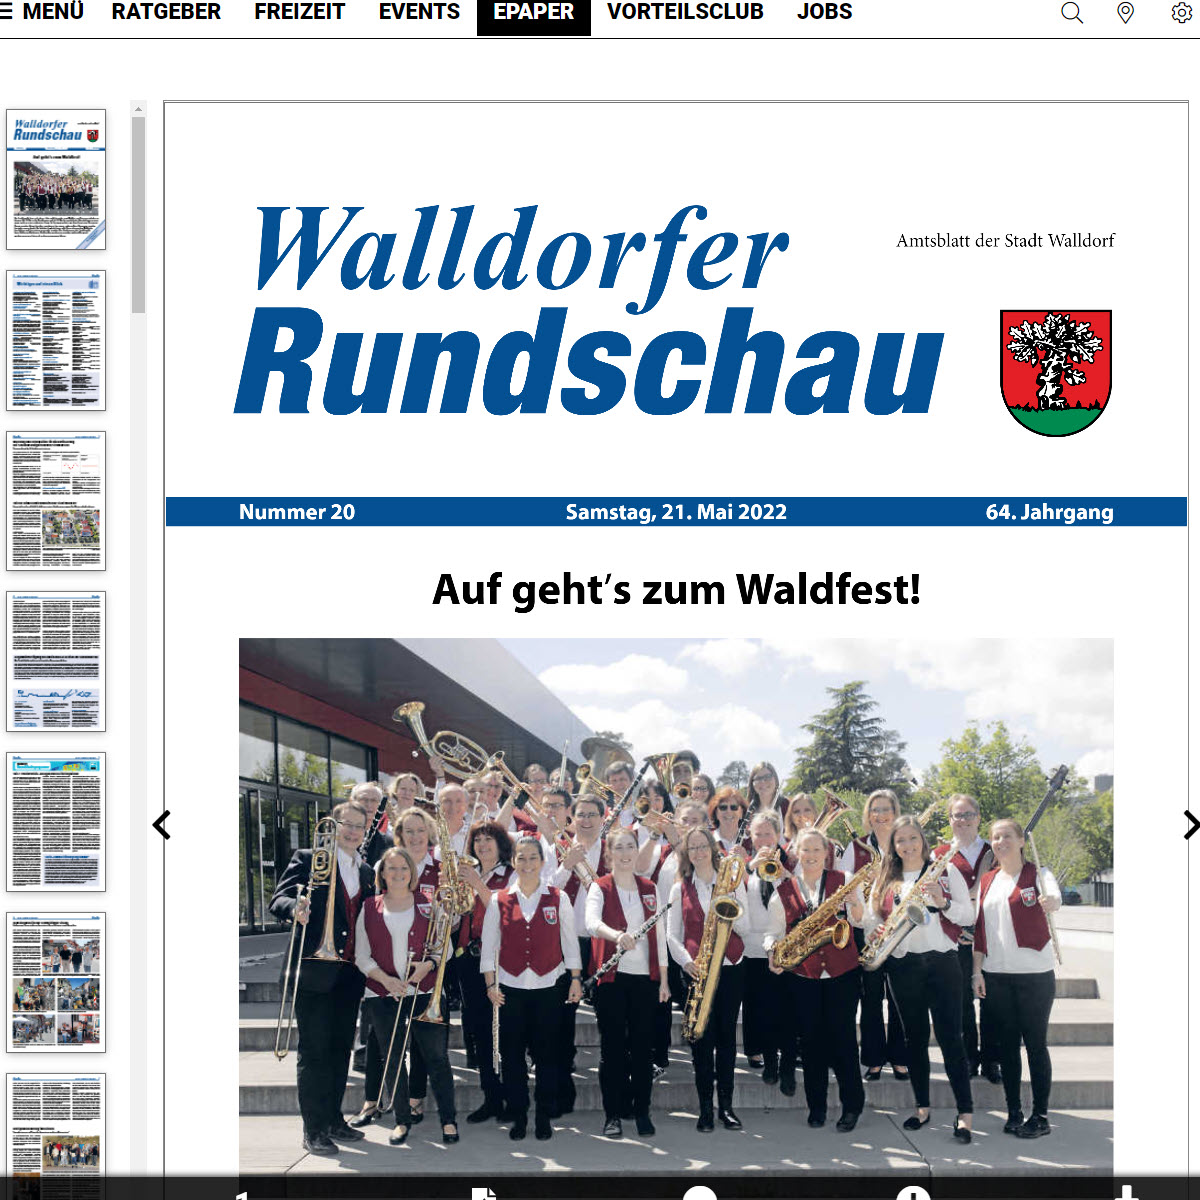 Die Walldorfer Rundschau 2022 Nr. 20 als E-Paper | Bildschirmabgriff: Dr. Clemens Kriesel